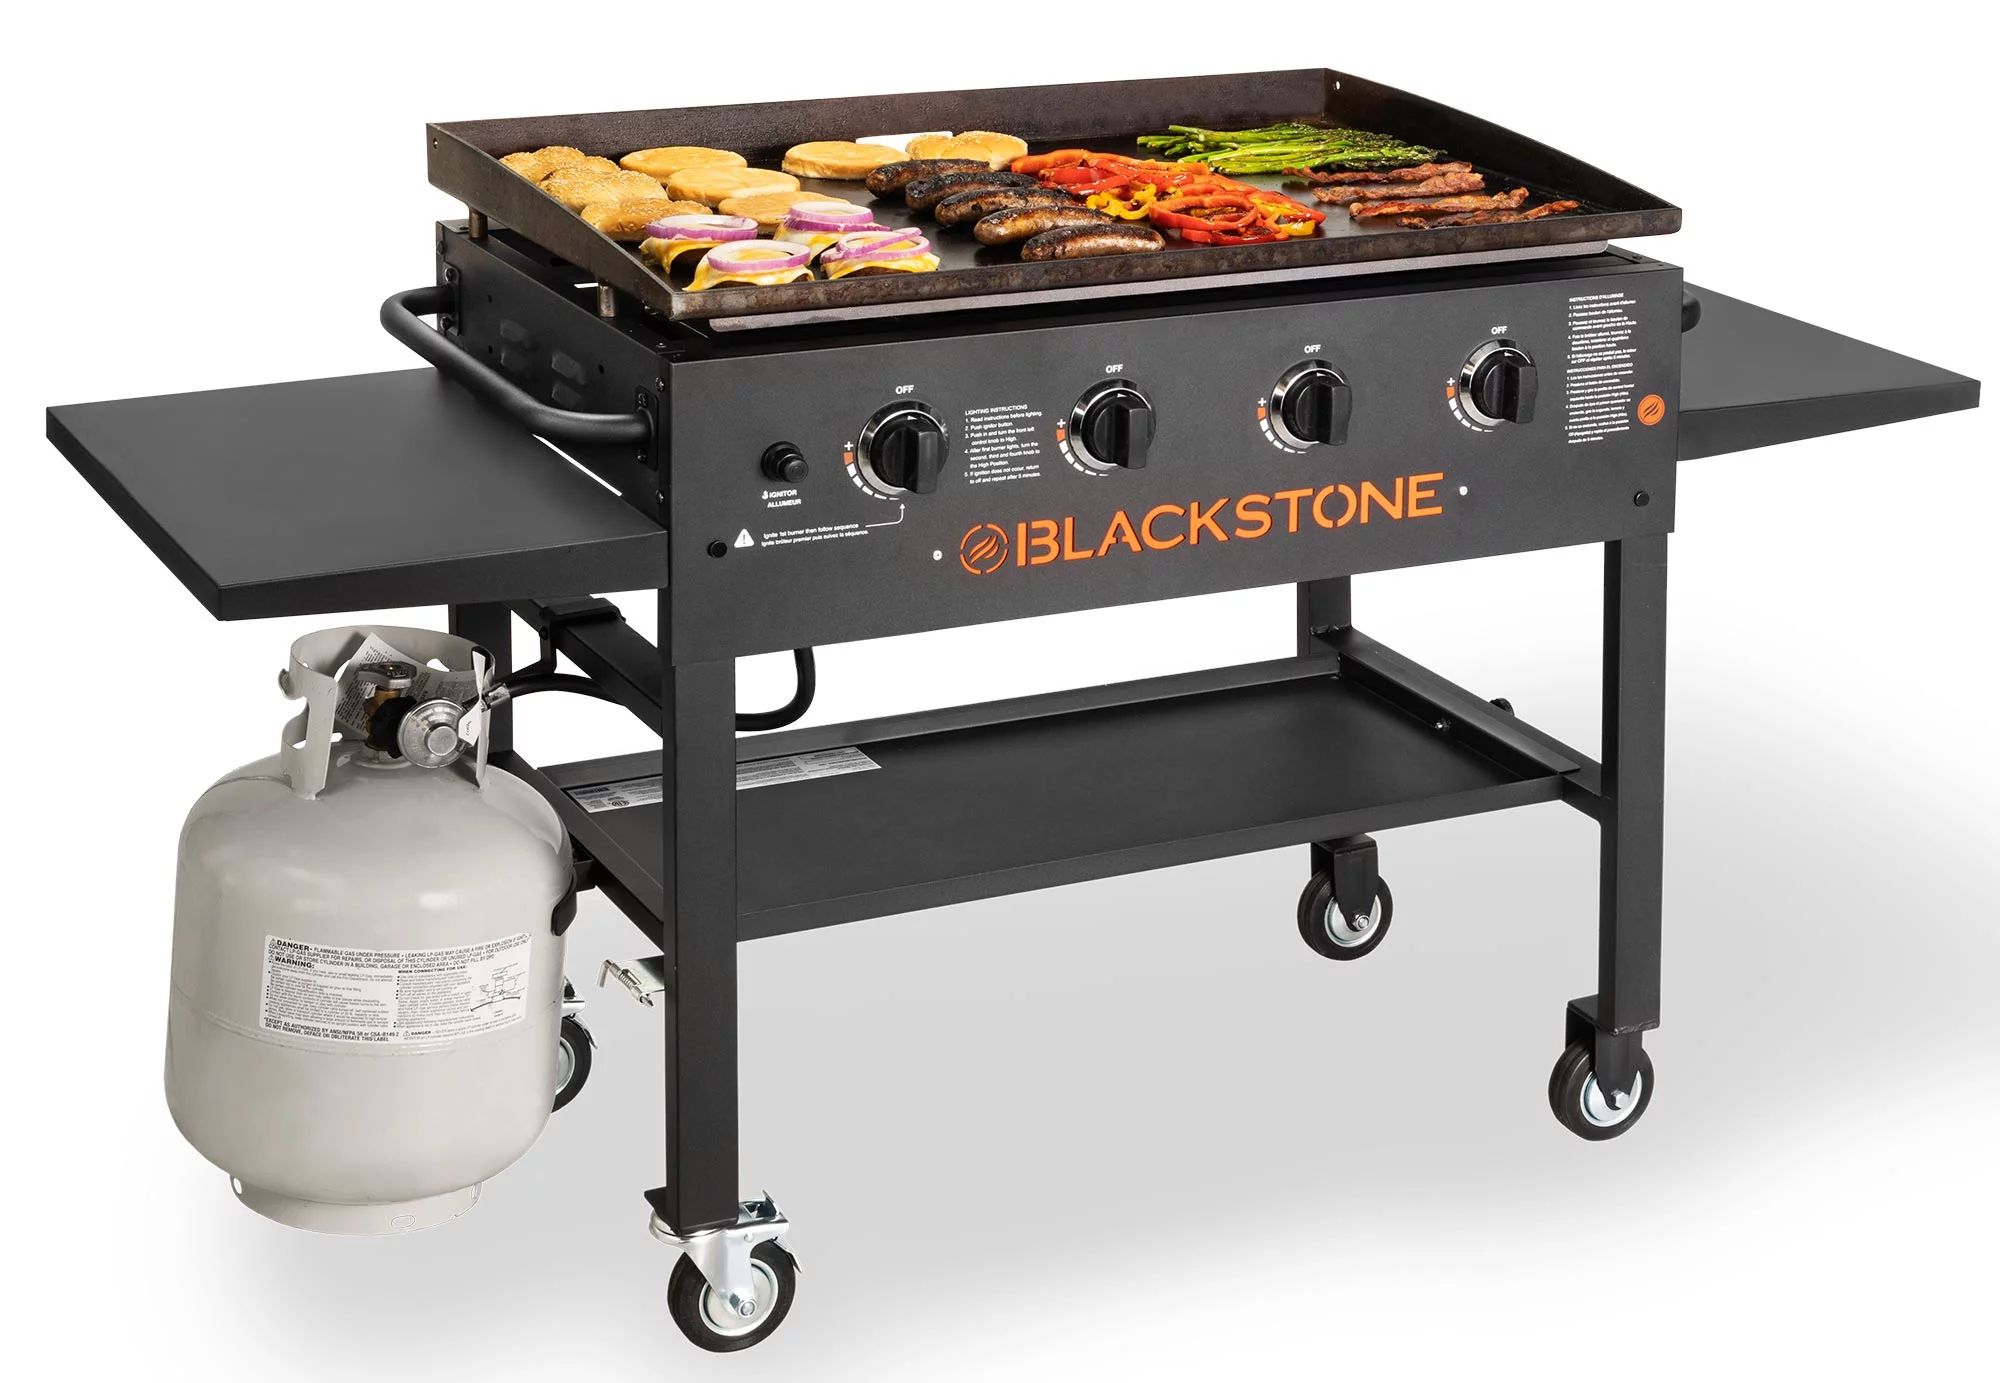 Blackstone 4-Burner 36" Griddle Cooking Station with Side Shelves | Walmart (US)